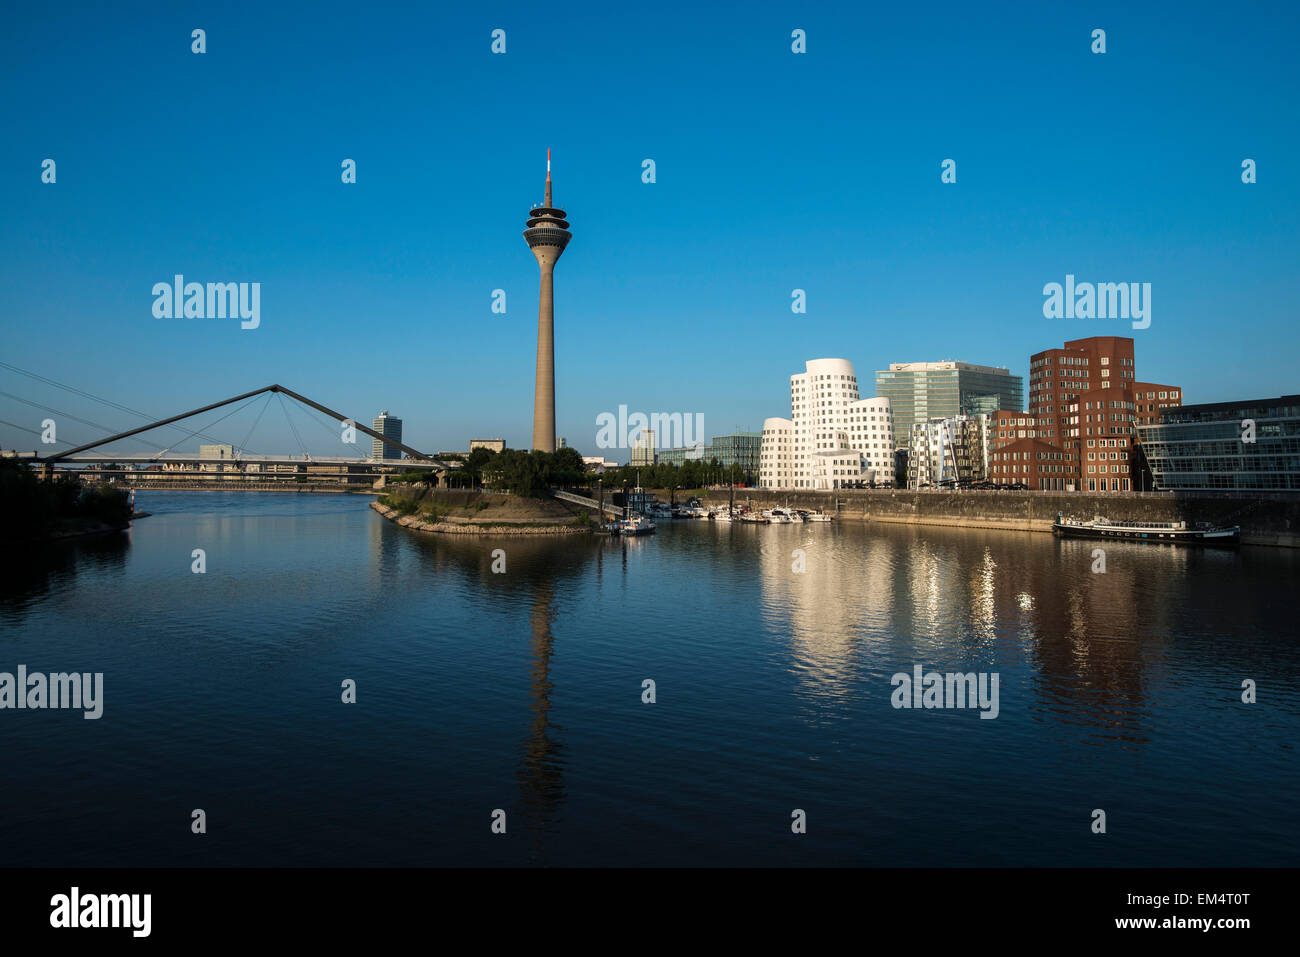 Rheinturm und Gehry-Bauten in Medien Hafen von Düsseldorf, Nordrhein-Westfalen, Deutschland, Nordeuropa Stockfoto